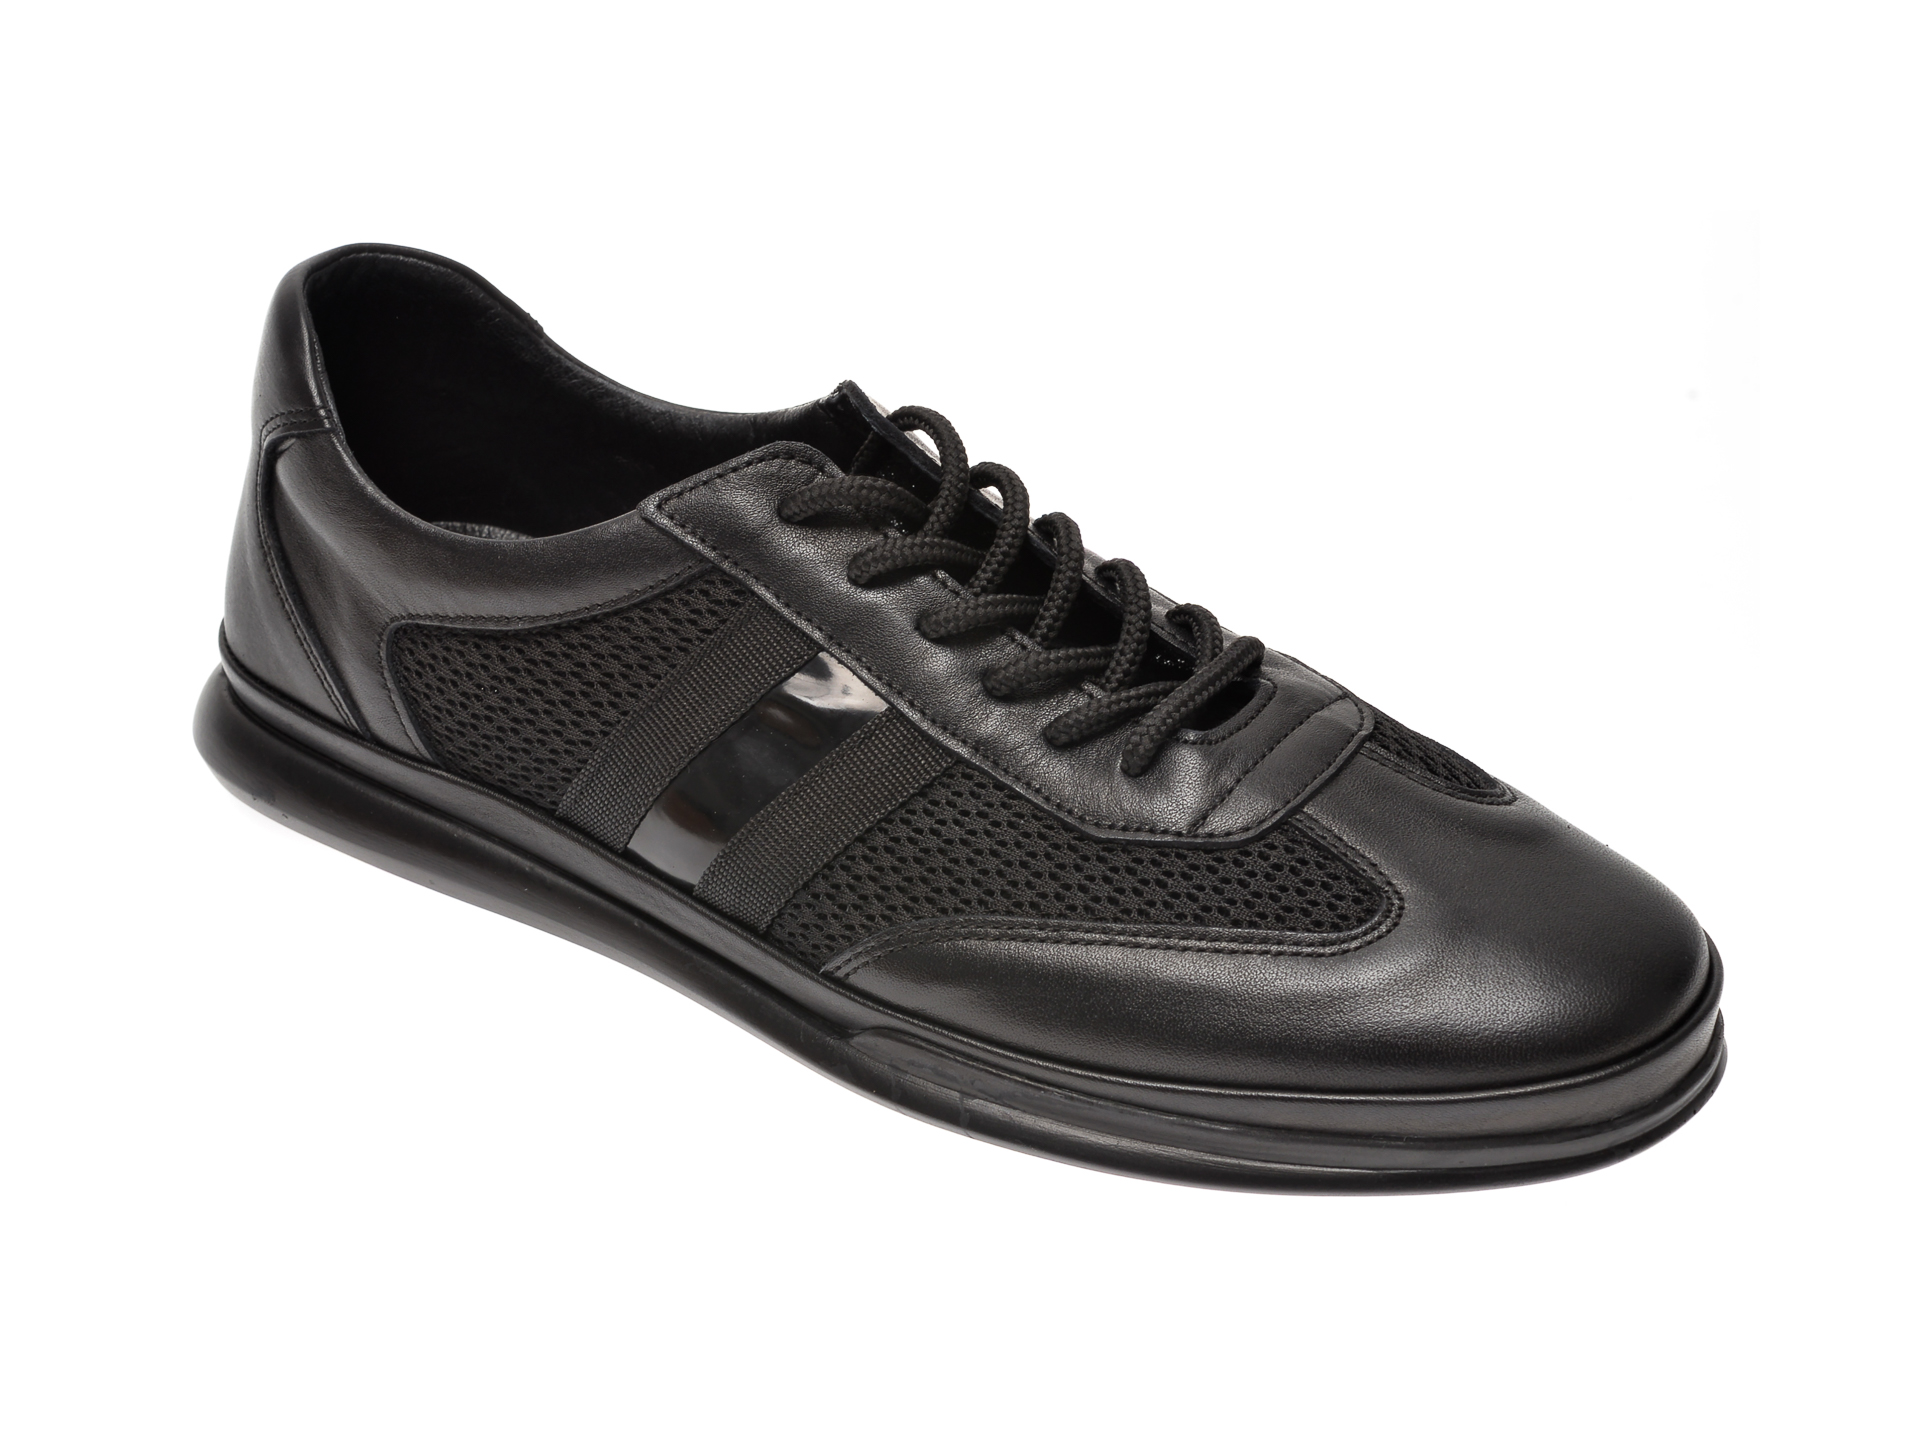 Pantofi OTTER negri, M5624, din materil textil textil si piele naturala